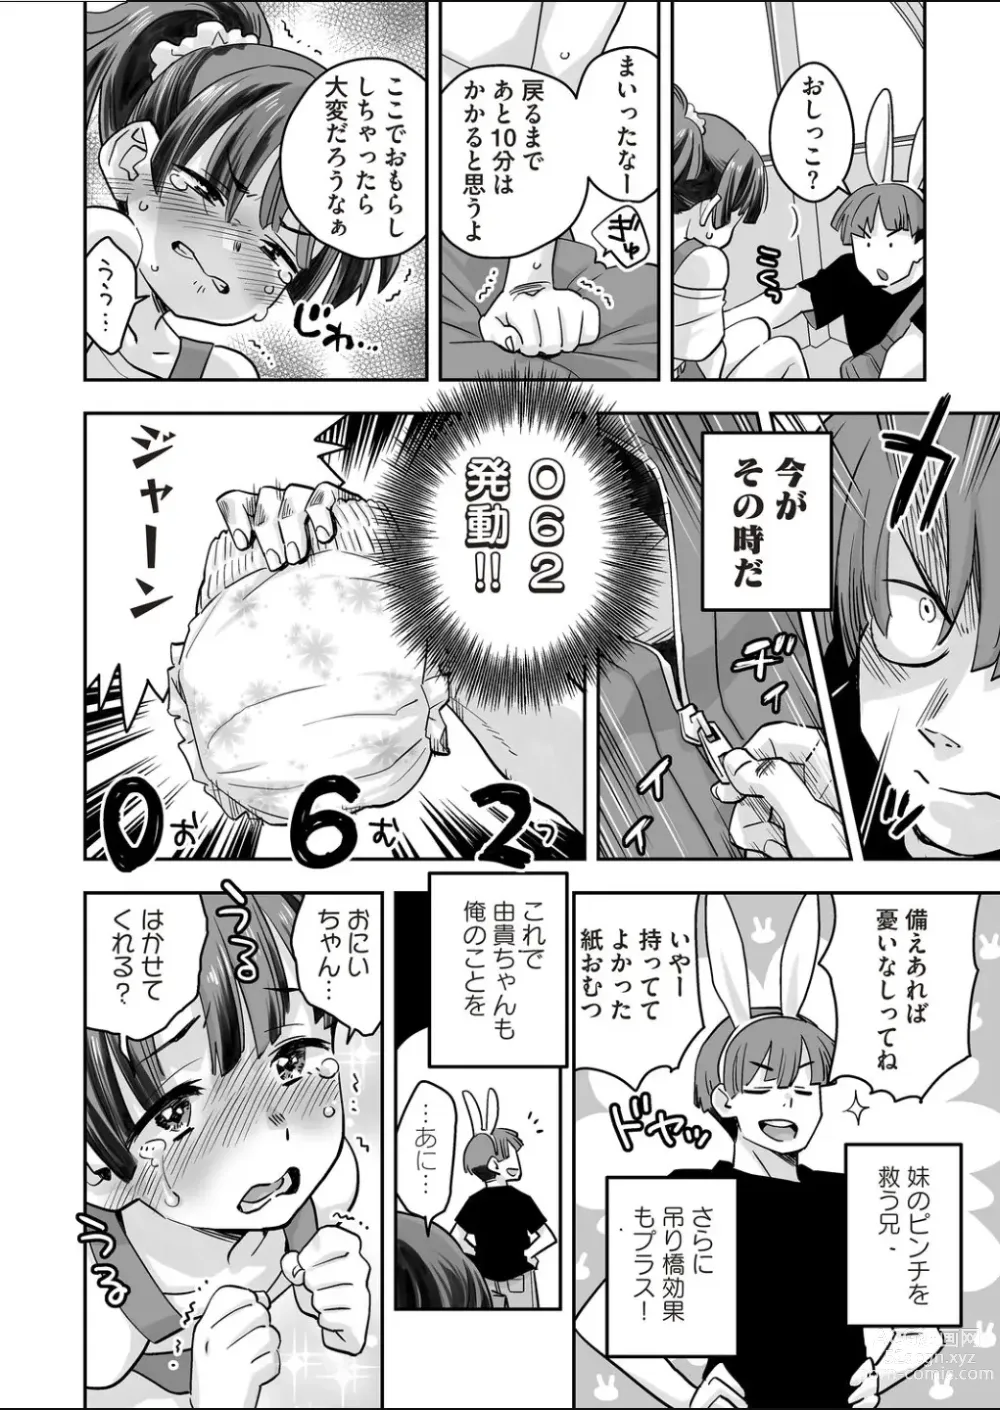 Page 4 of manga Codename wa 062